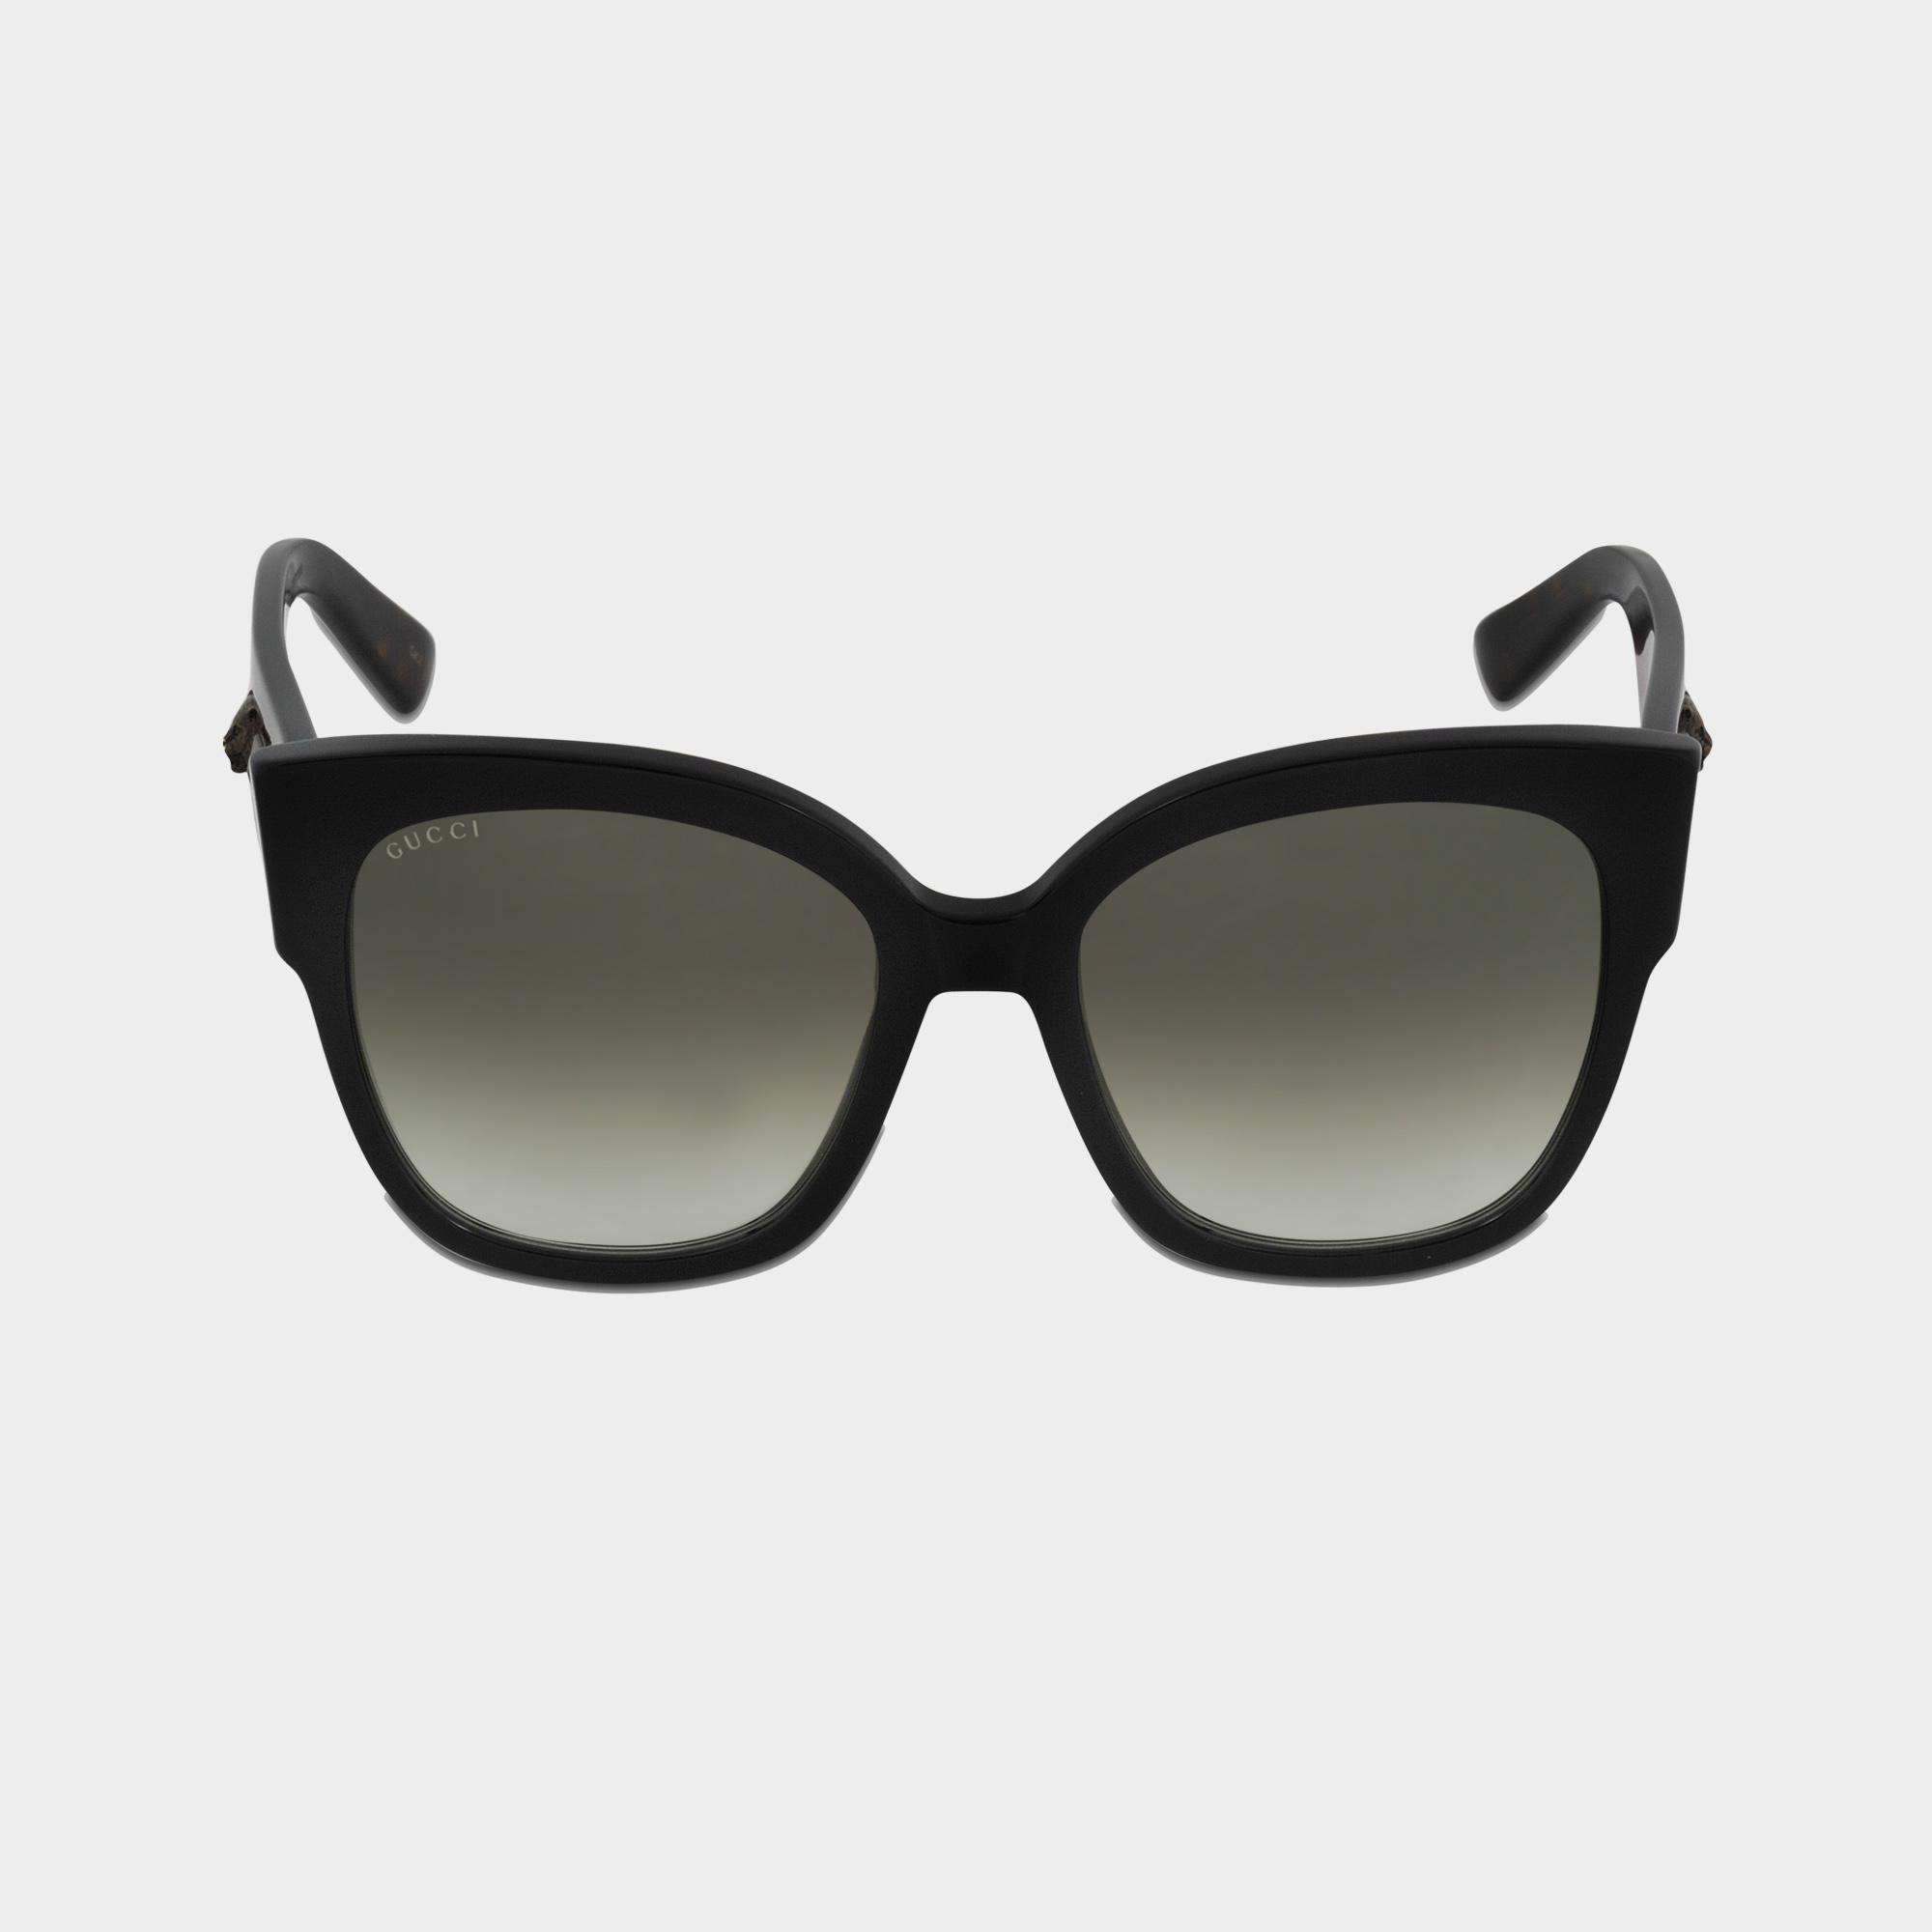 Gucci Sunglasses GG0059S-001 in Black - Lyst